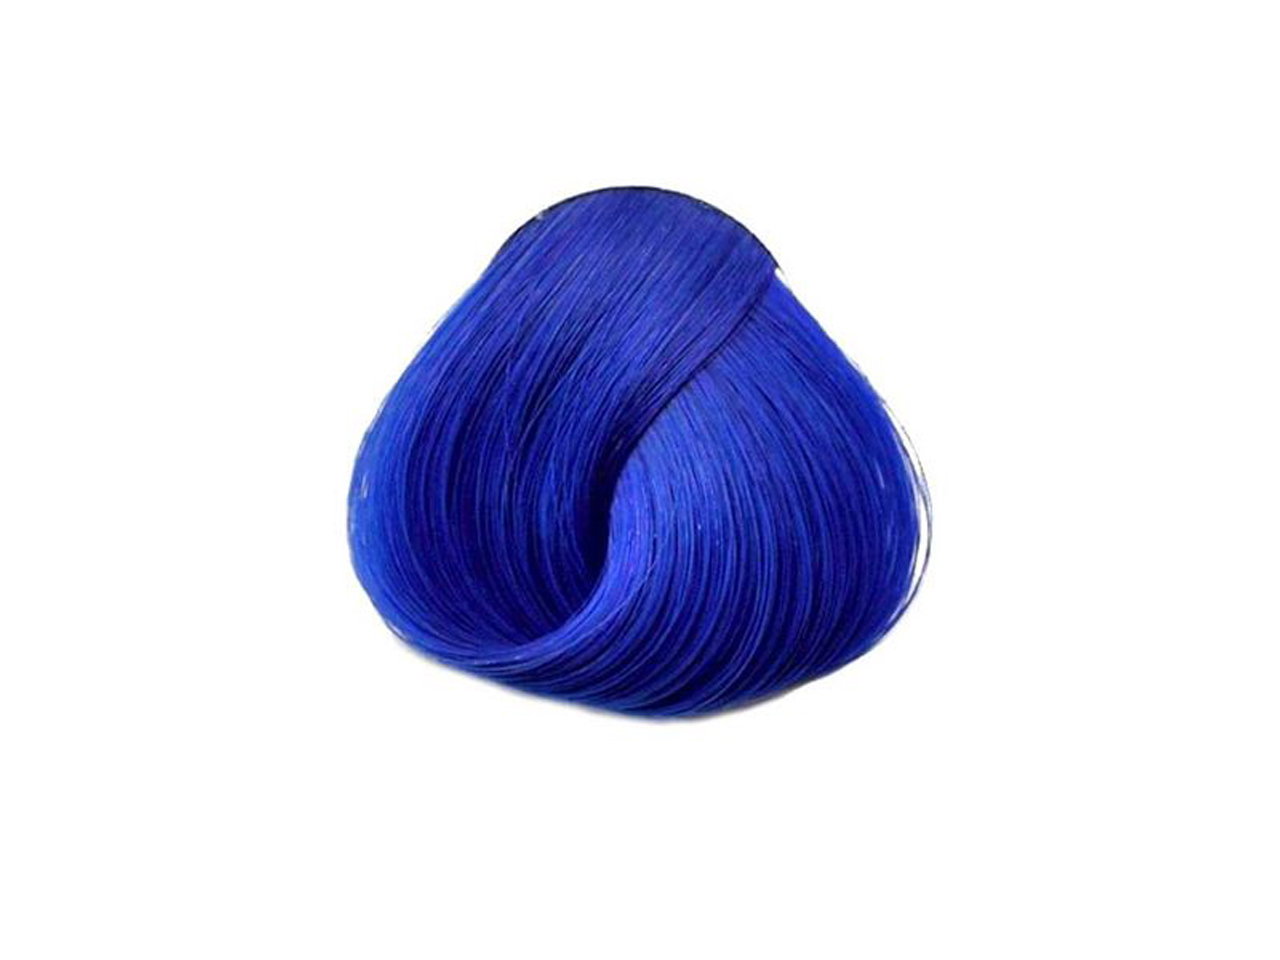 la riche hair dye blue